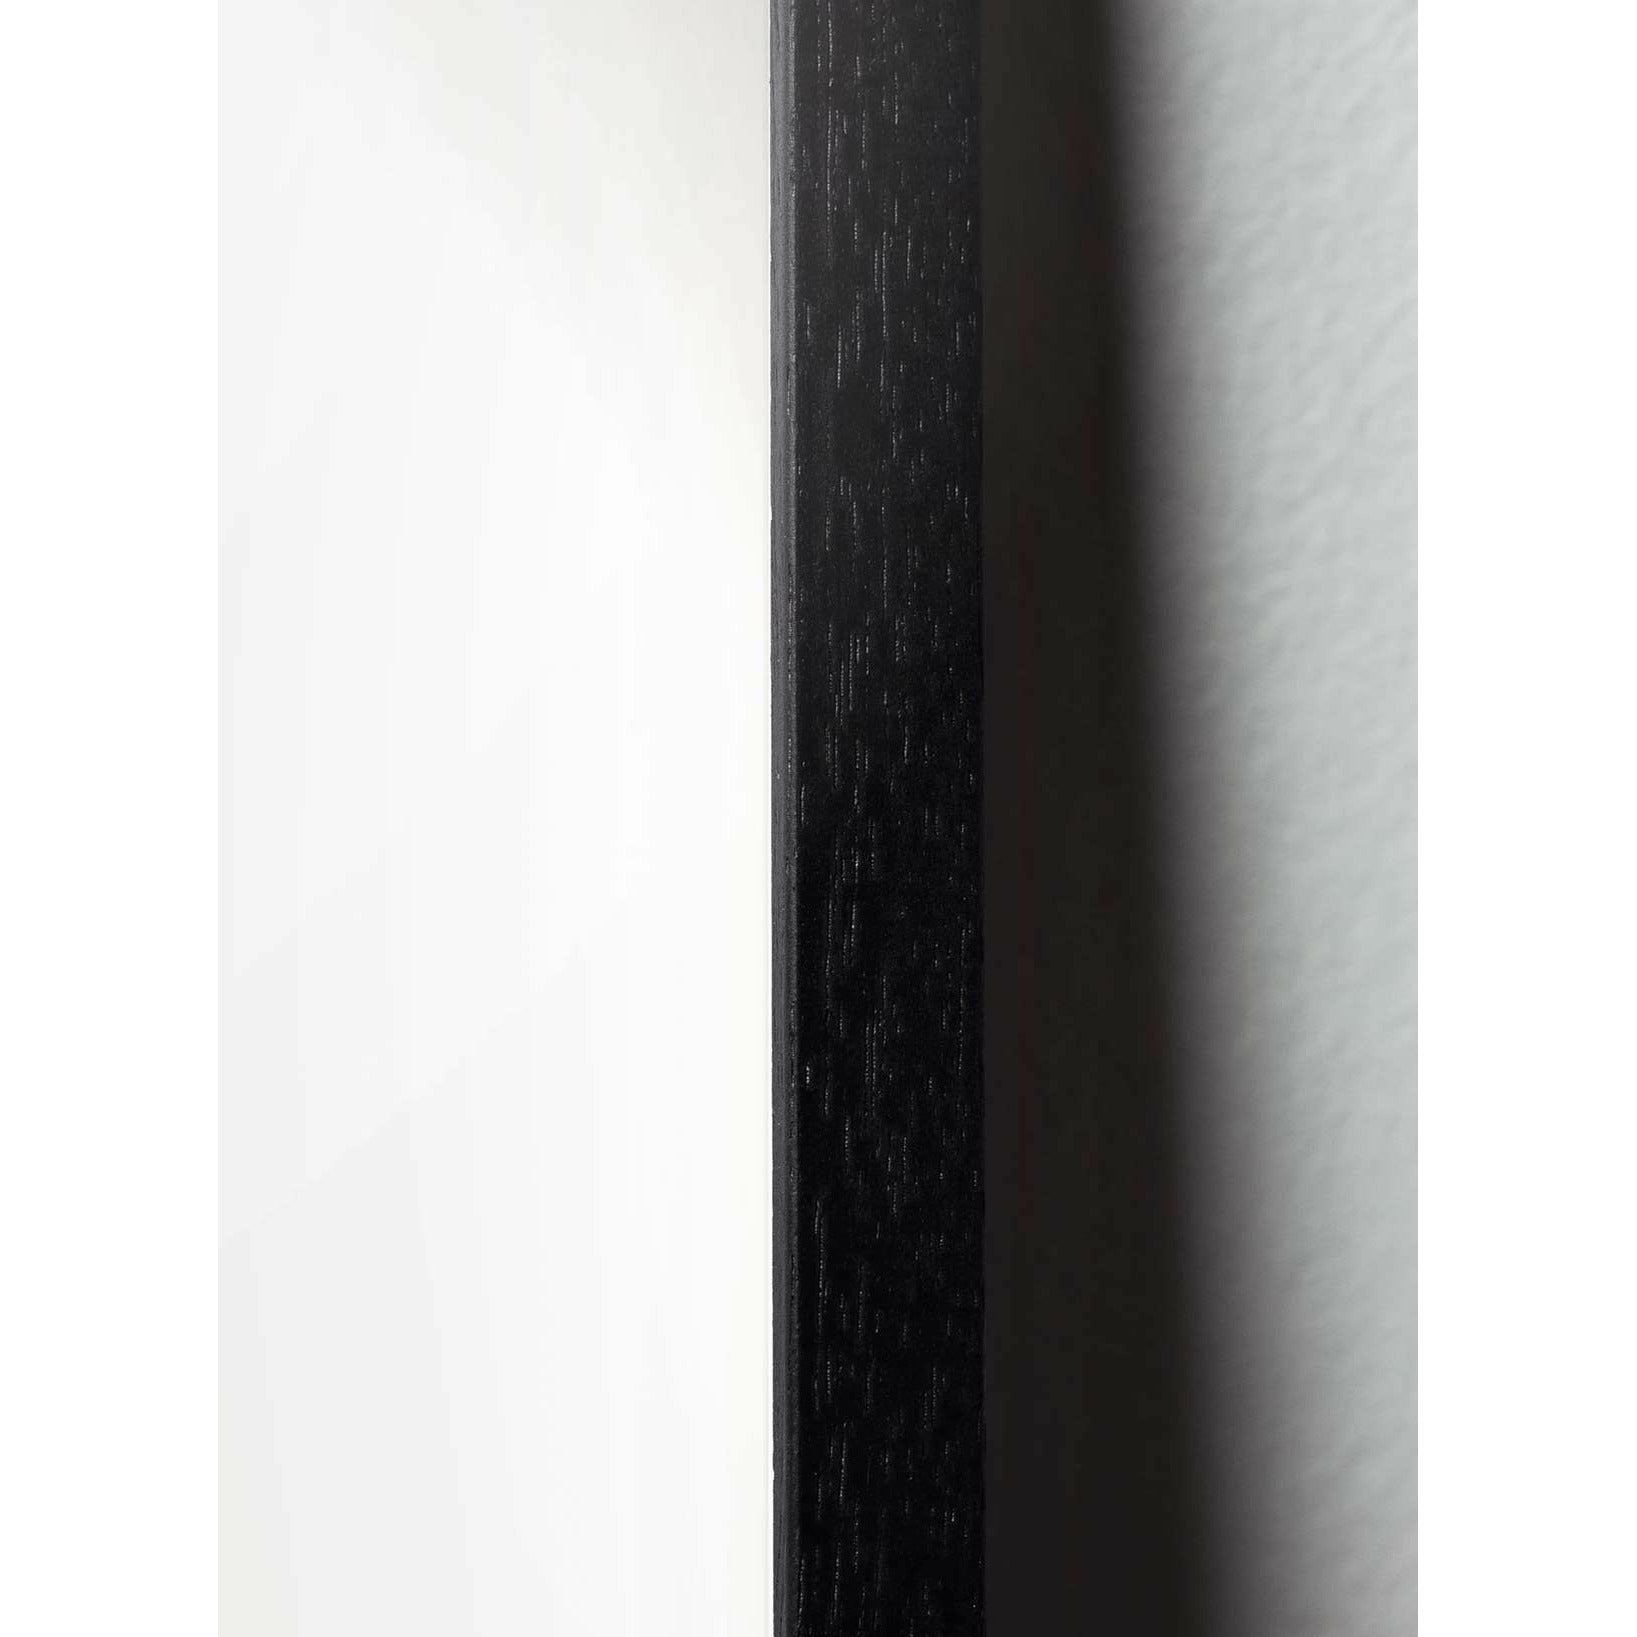 Póster clásico de hormigas de creación, marco en madera lacada negra de 30x40 cm, fondo blanco